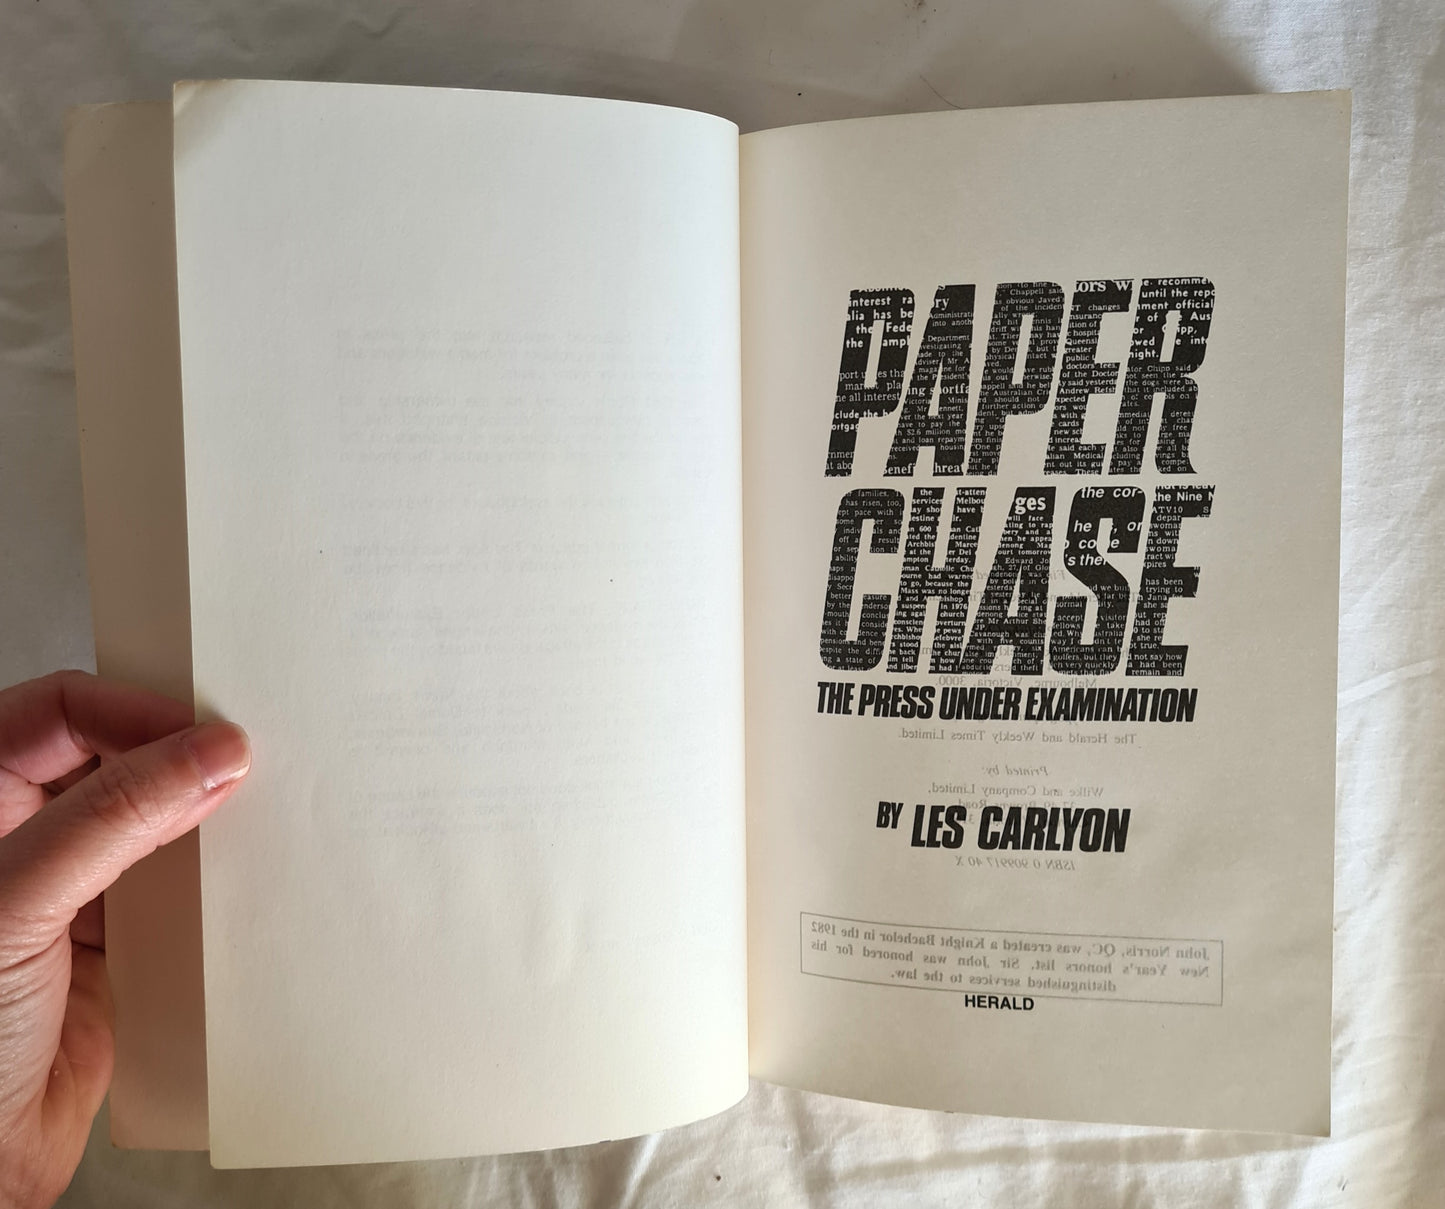 Paperchase by Les Carlyon